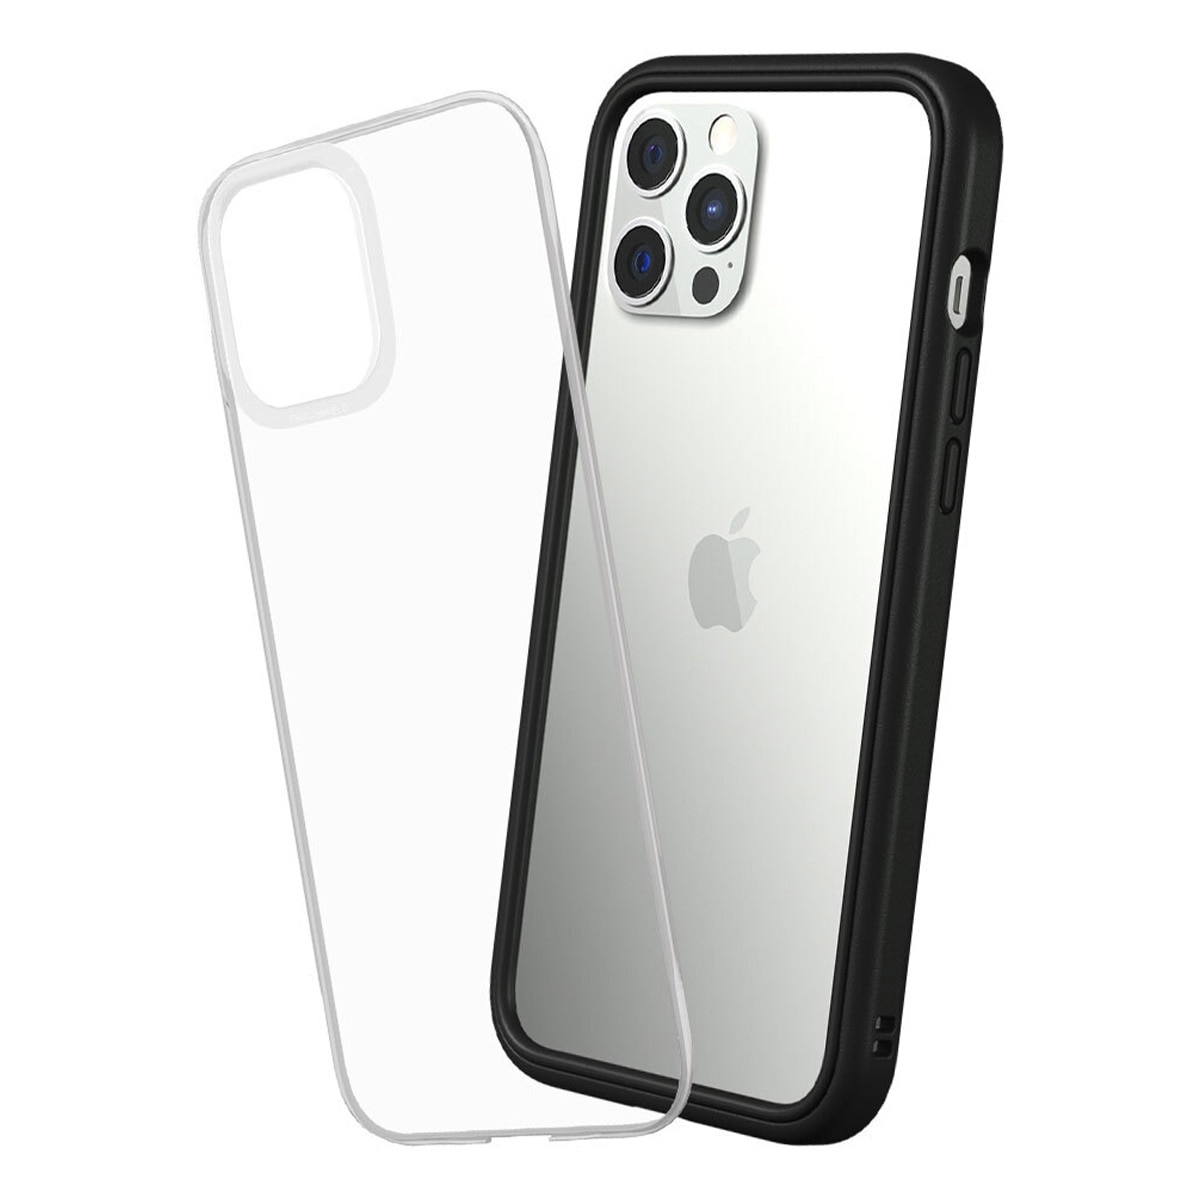 犀牛盾 iPhone 12 Pro Max Mod NX 手機殼 + 9H 3D滿版玻璃保護貼